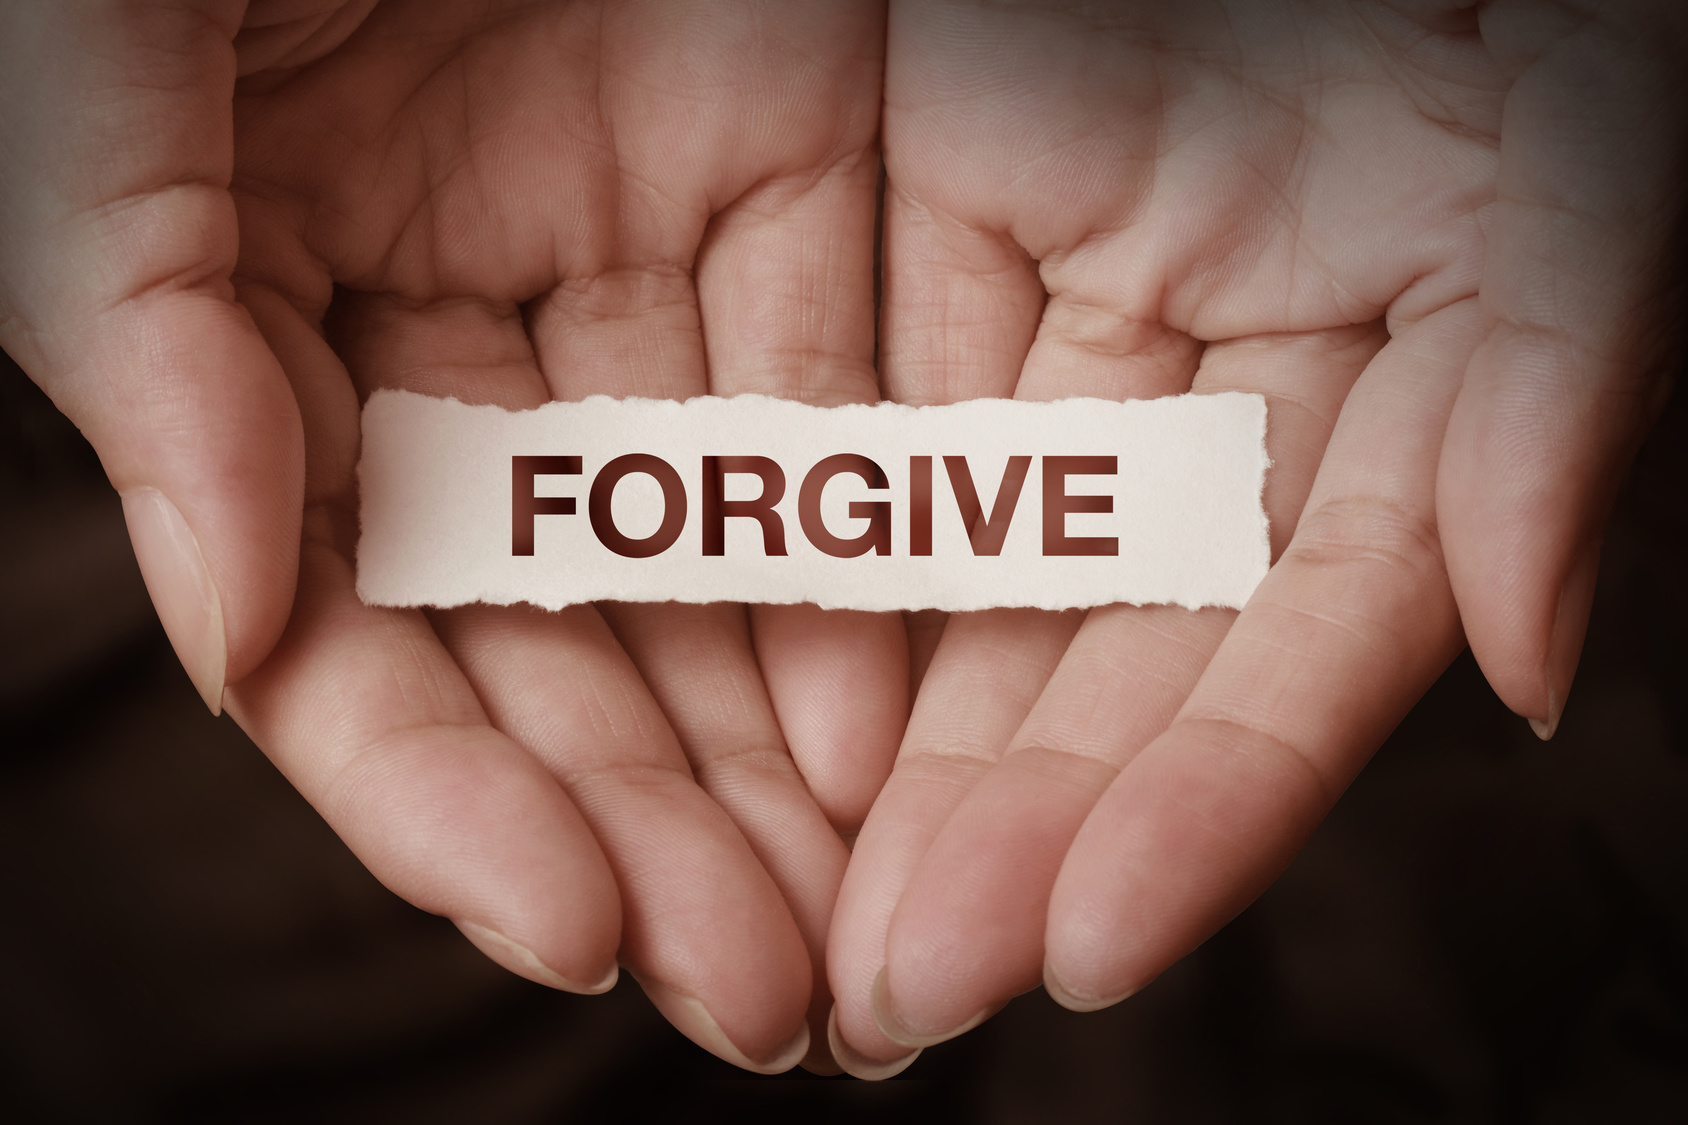 مسیح میں ایک دوسرے کو معاف کریں اور صلح کی طرف ہاتھ بڑھاییں - معاف کرنا